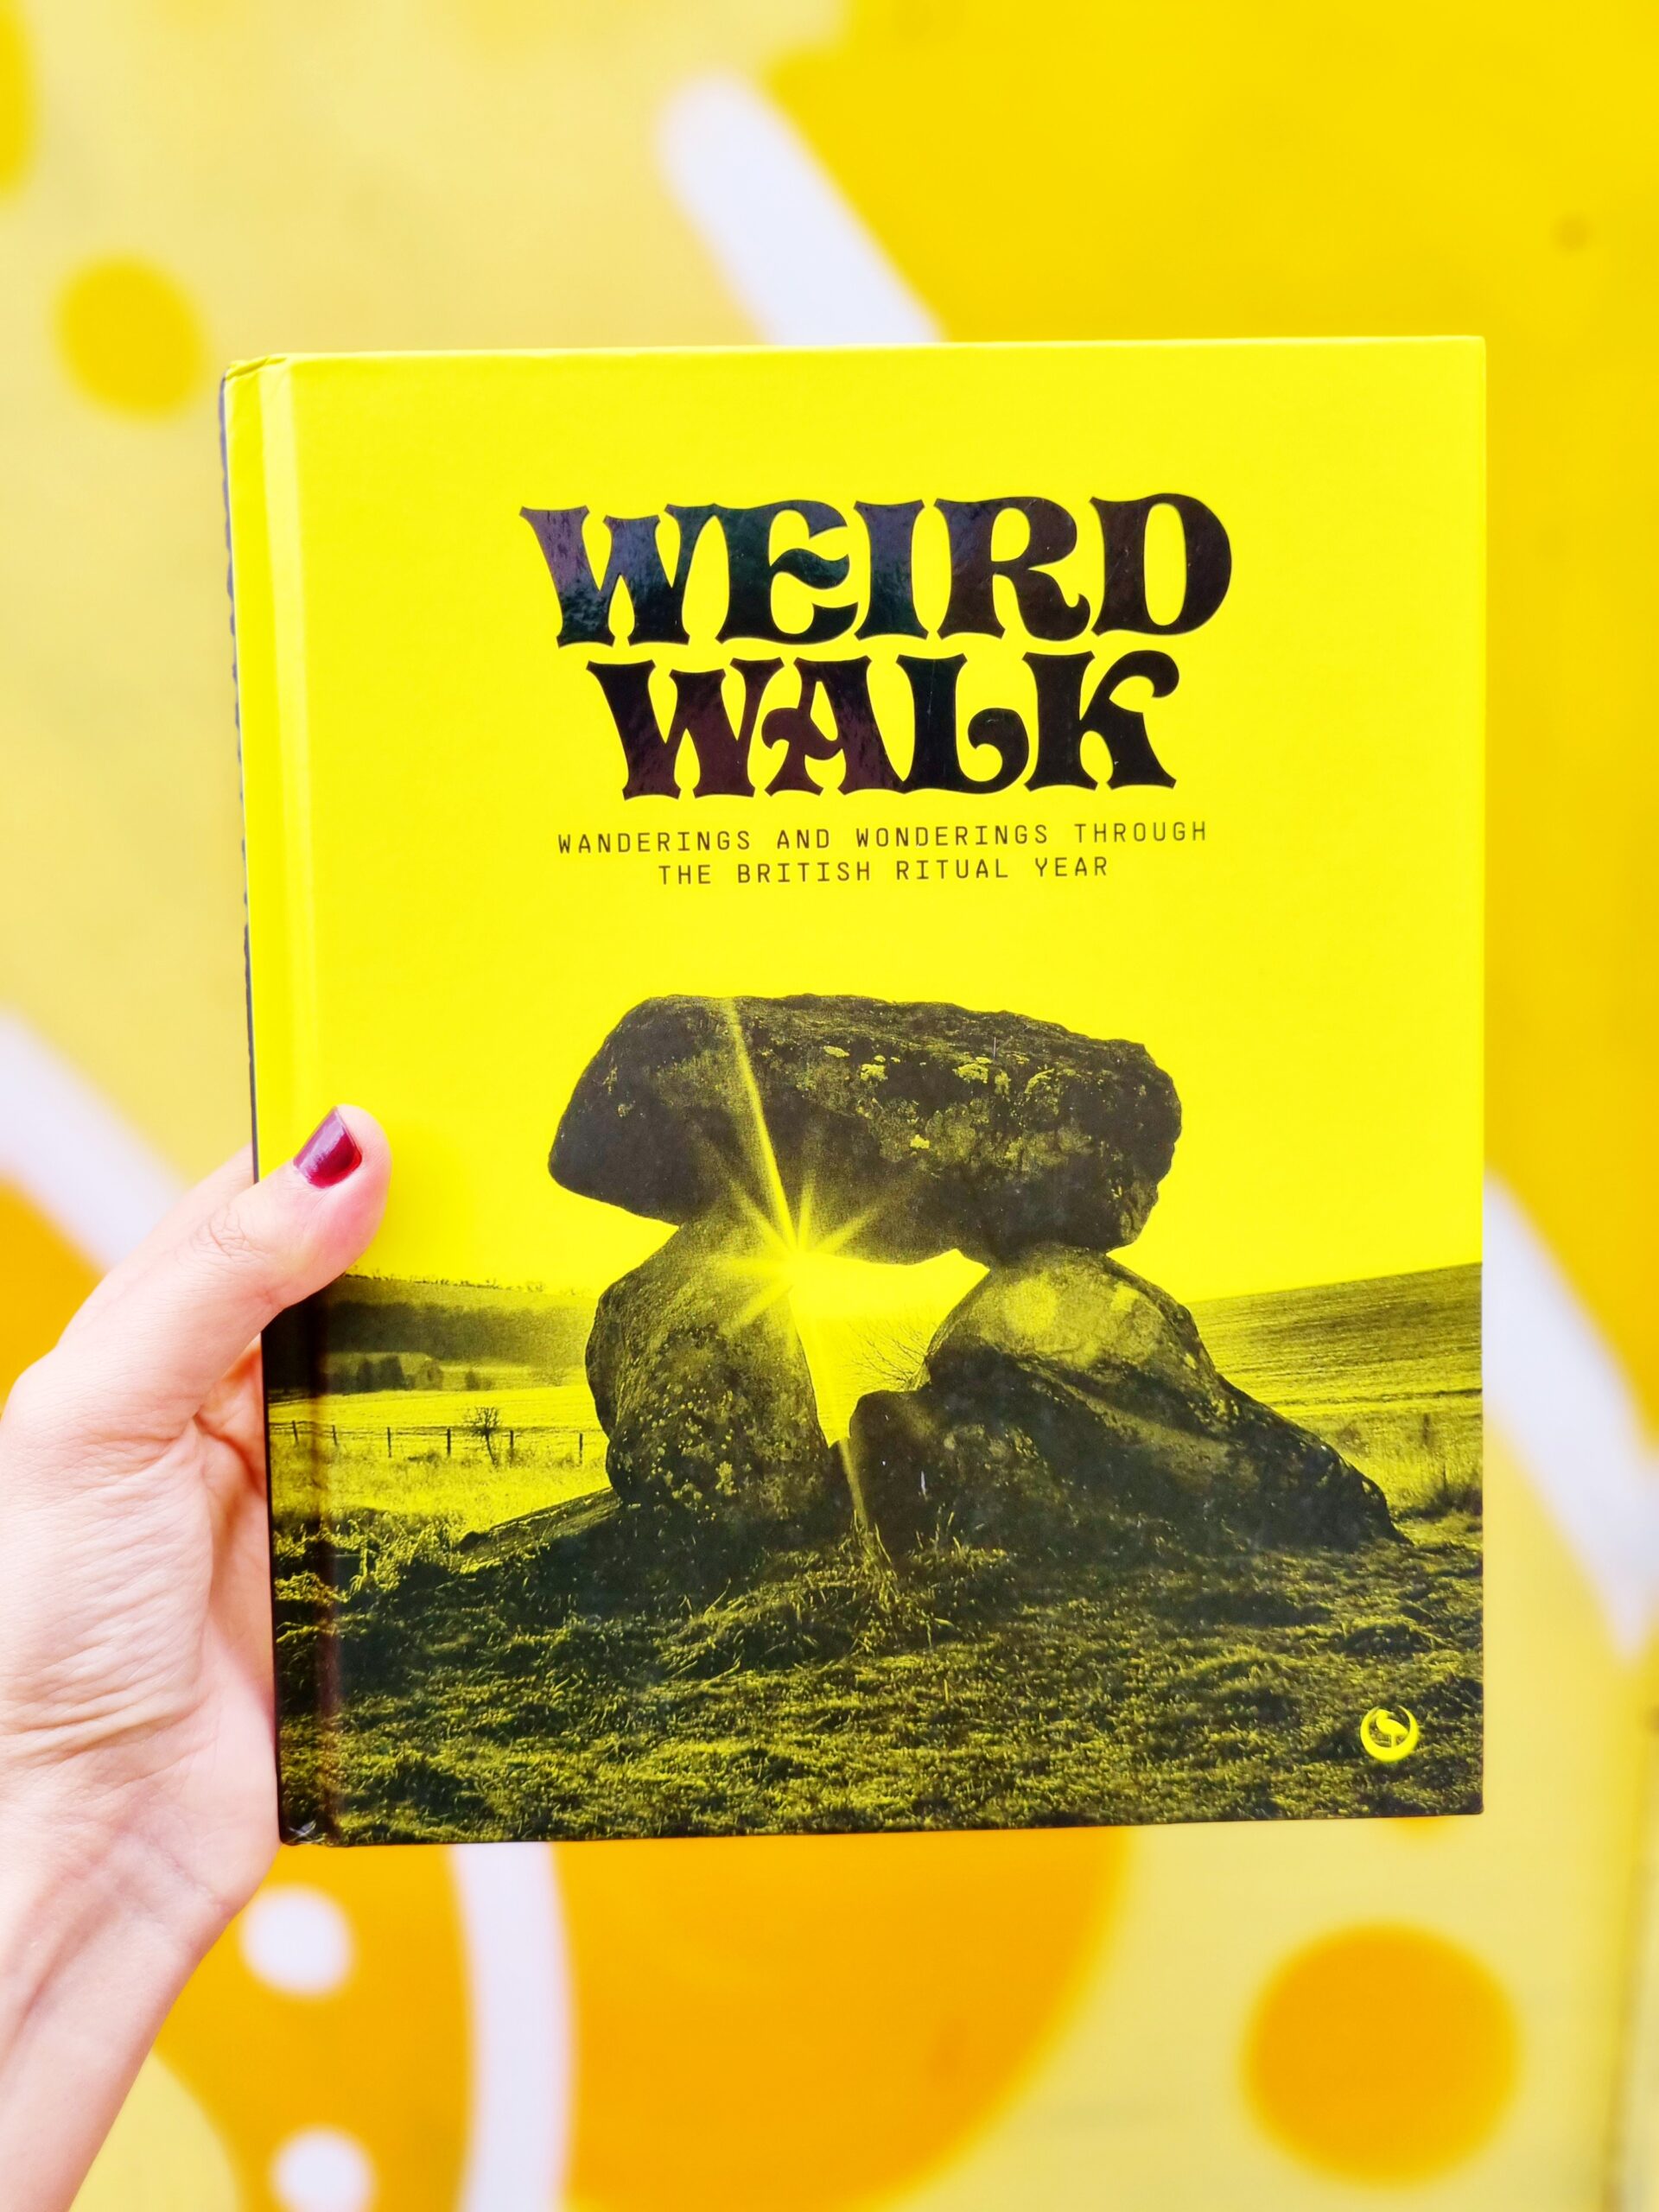 <img src="weird.jpg" alt="weird walk book indulgent christmas gift"/>